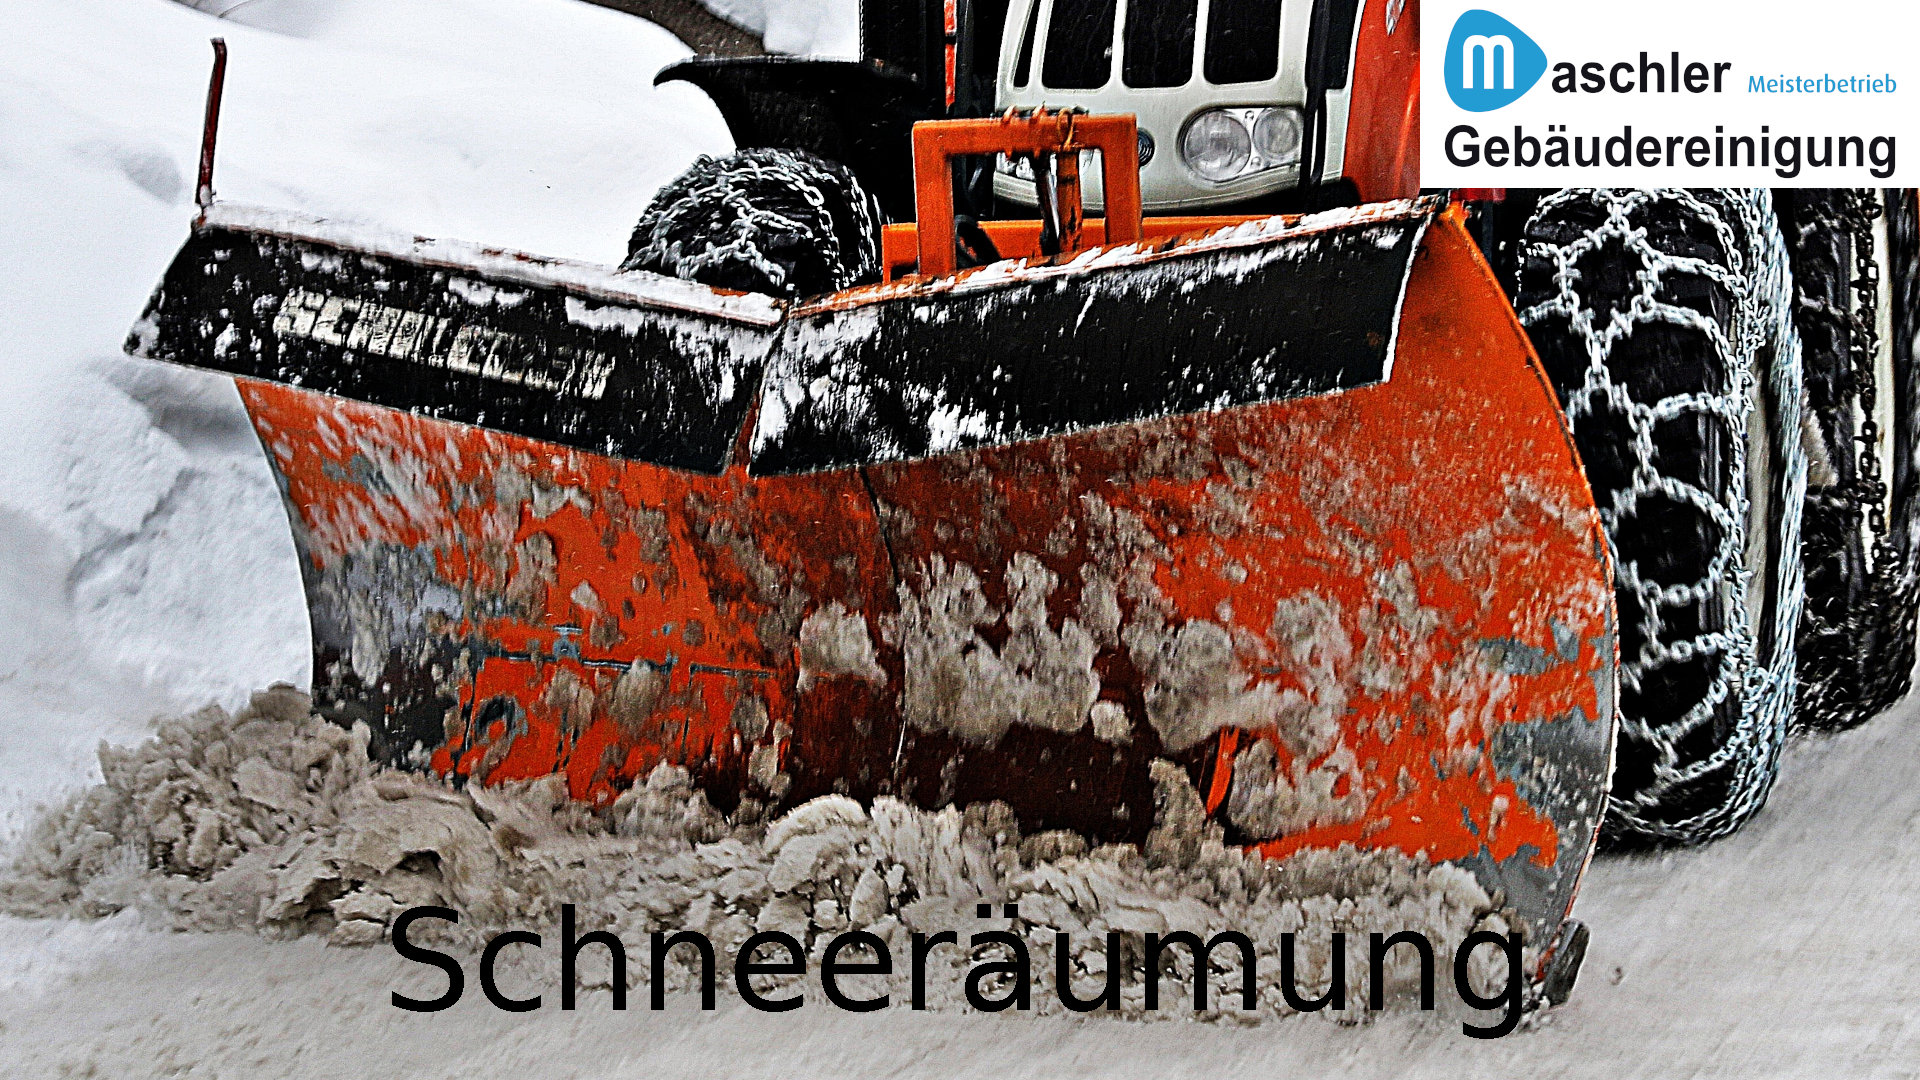 Schneeräumung - Gebäudereinigung Maschler Schwerin